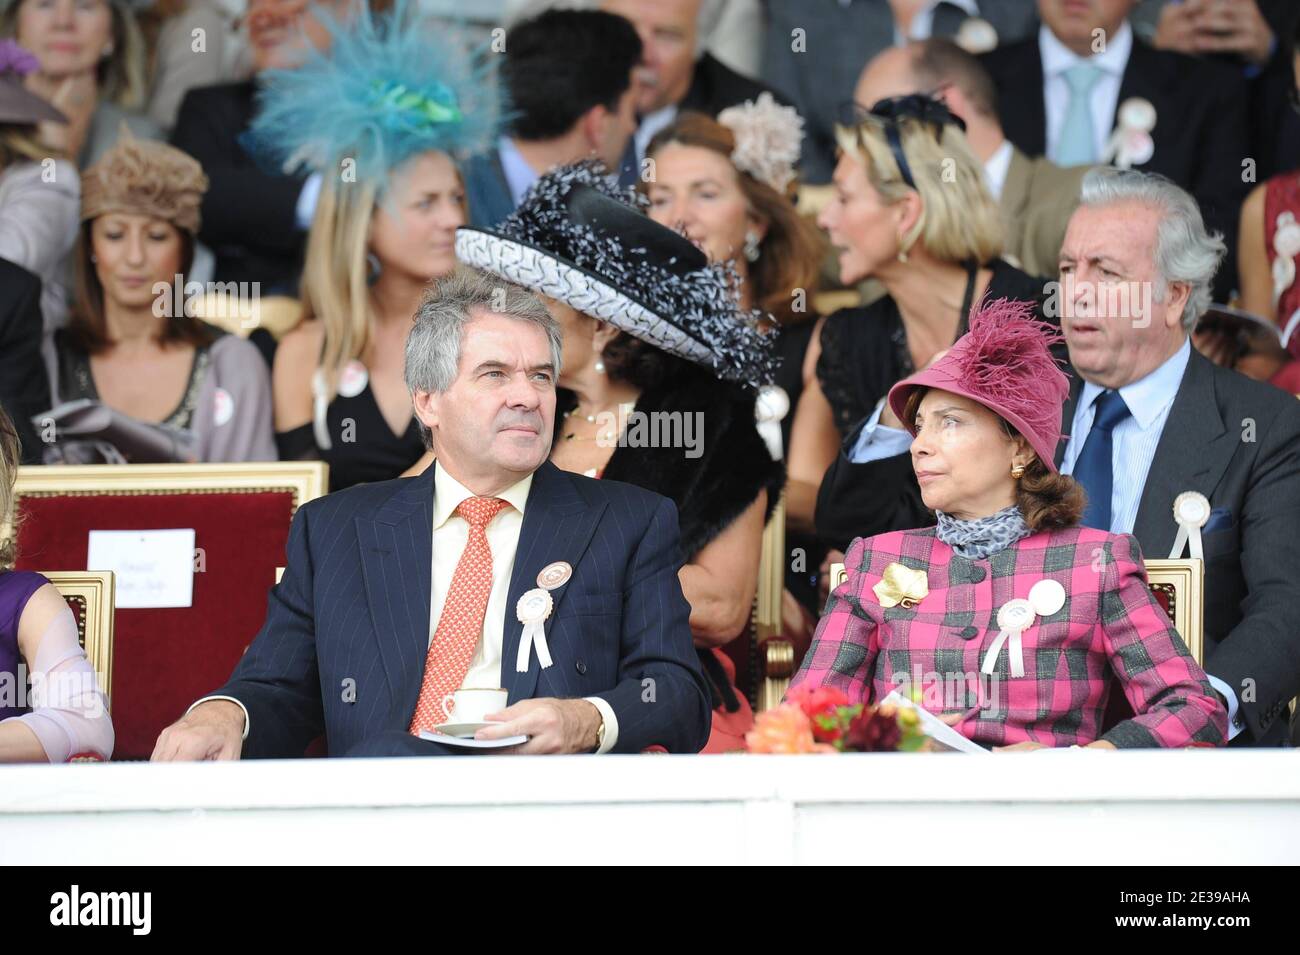 Sir Peter Westmacott, ambassadeur de Grande-Bretagne en France, et son épouse assistent à la 89e édition du prix Qatar Arc de Triomphe à l'hippodrome de Longchamp le 3 octobre 2010 à Paris, France. Photo de Nicolas Gouhier/ABACAPRESS.COM Banque D'Images